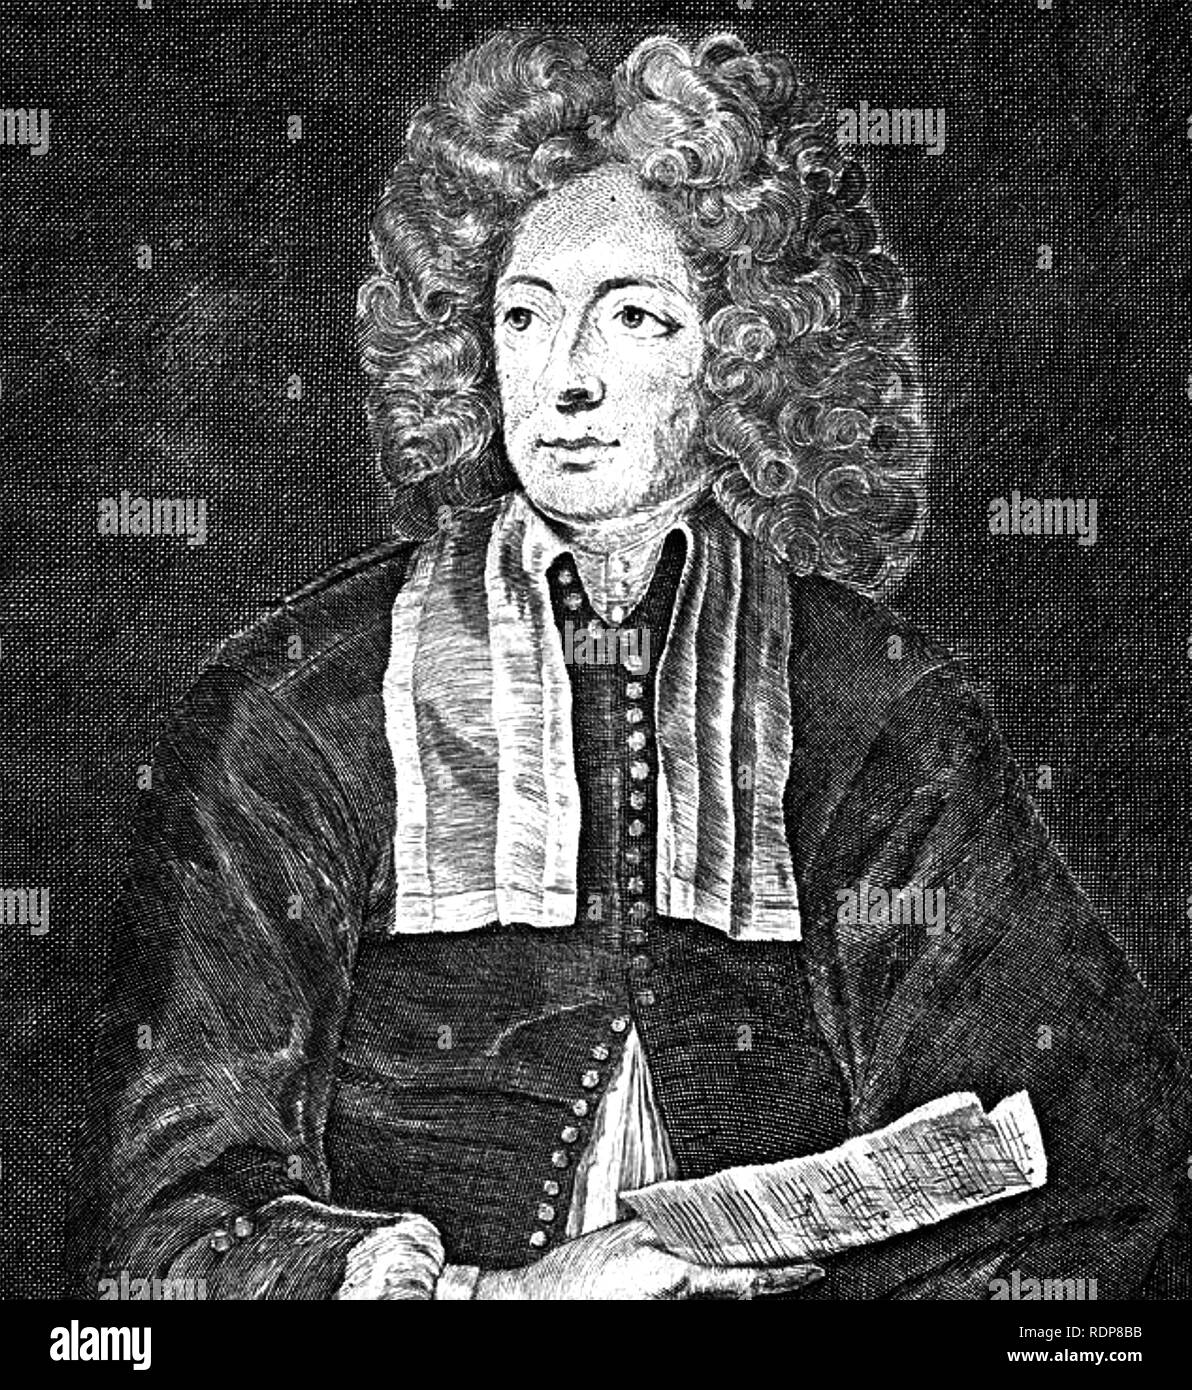 ARCANGELO CORELLI (1653-1713) italienischer Barock Musiker. Gravur auf Malerei 1697 basiert. Stockfoto